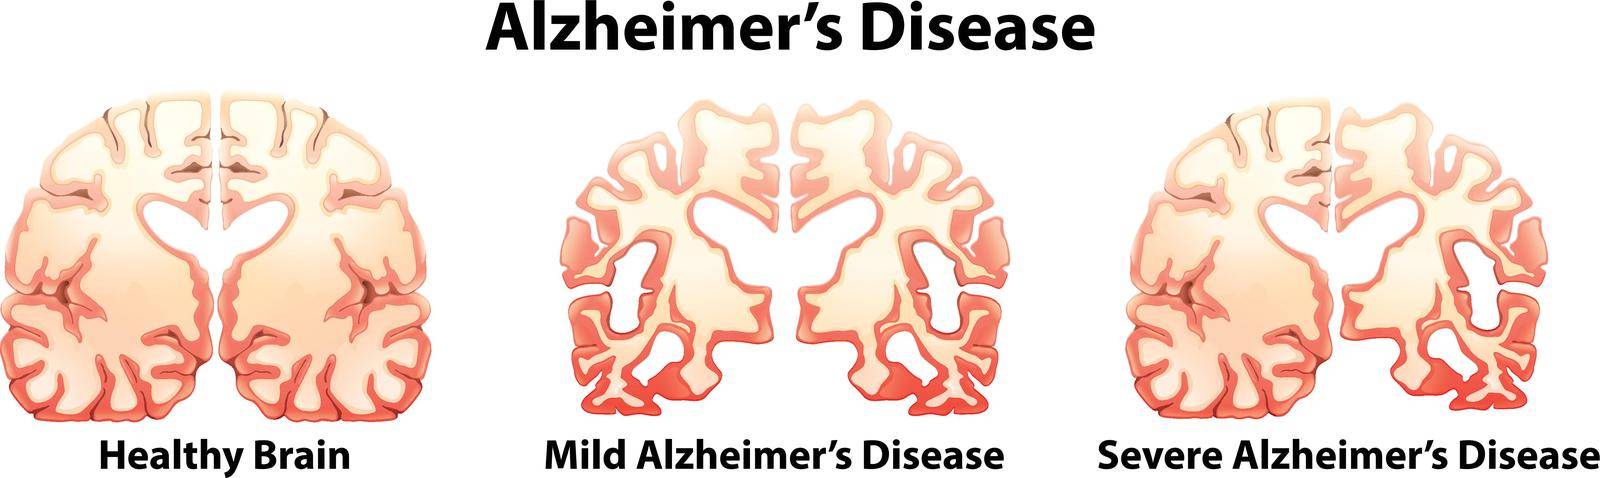 Alzheimer's Disease by iimages